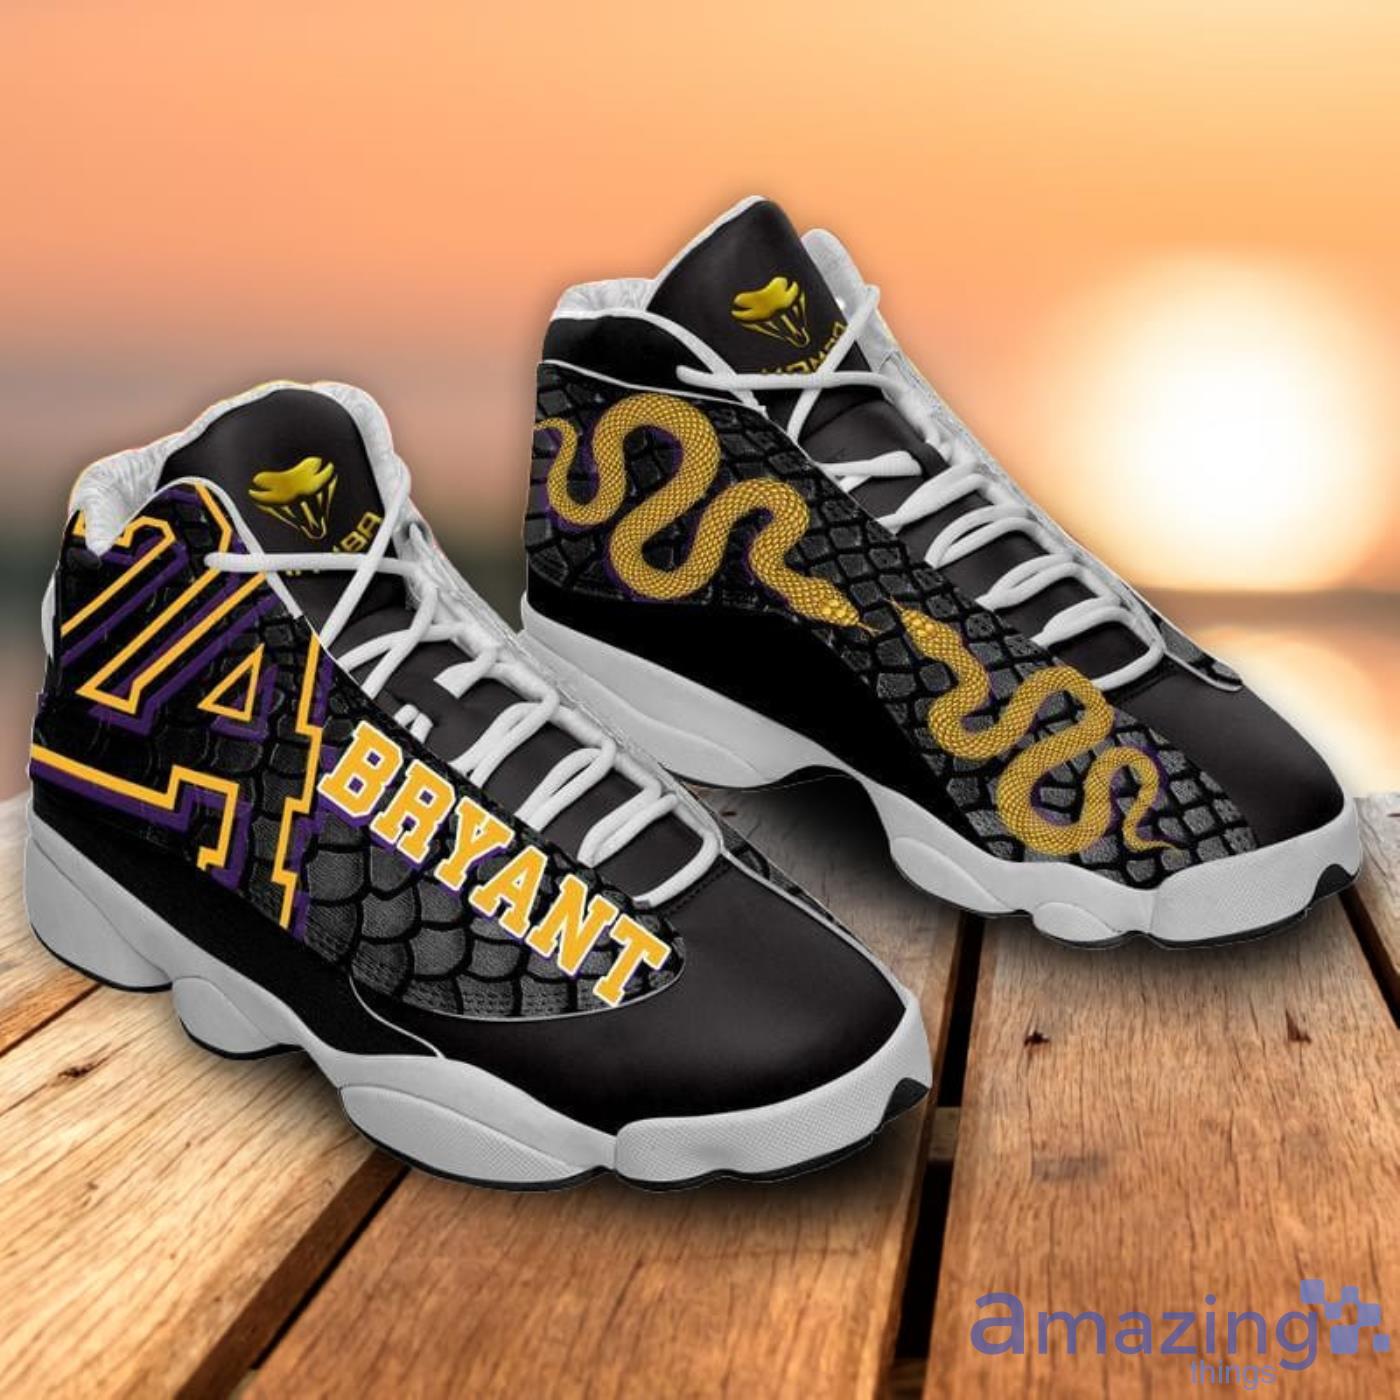 Kobe Bryant La Lakers Limited Edition Air Jordan 13 Sneakers Shoes